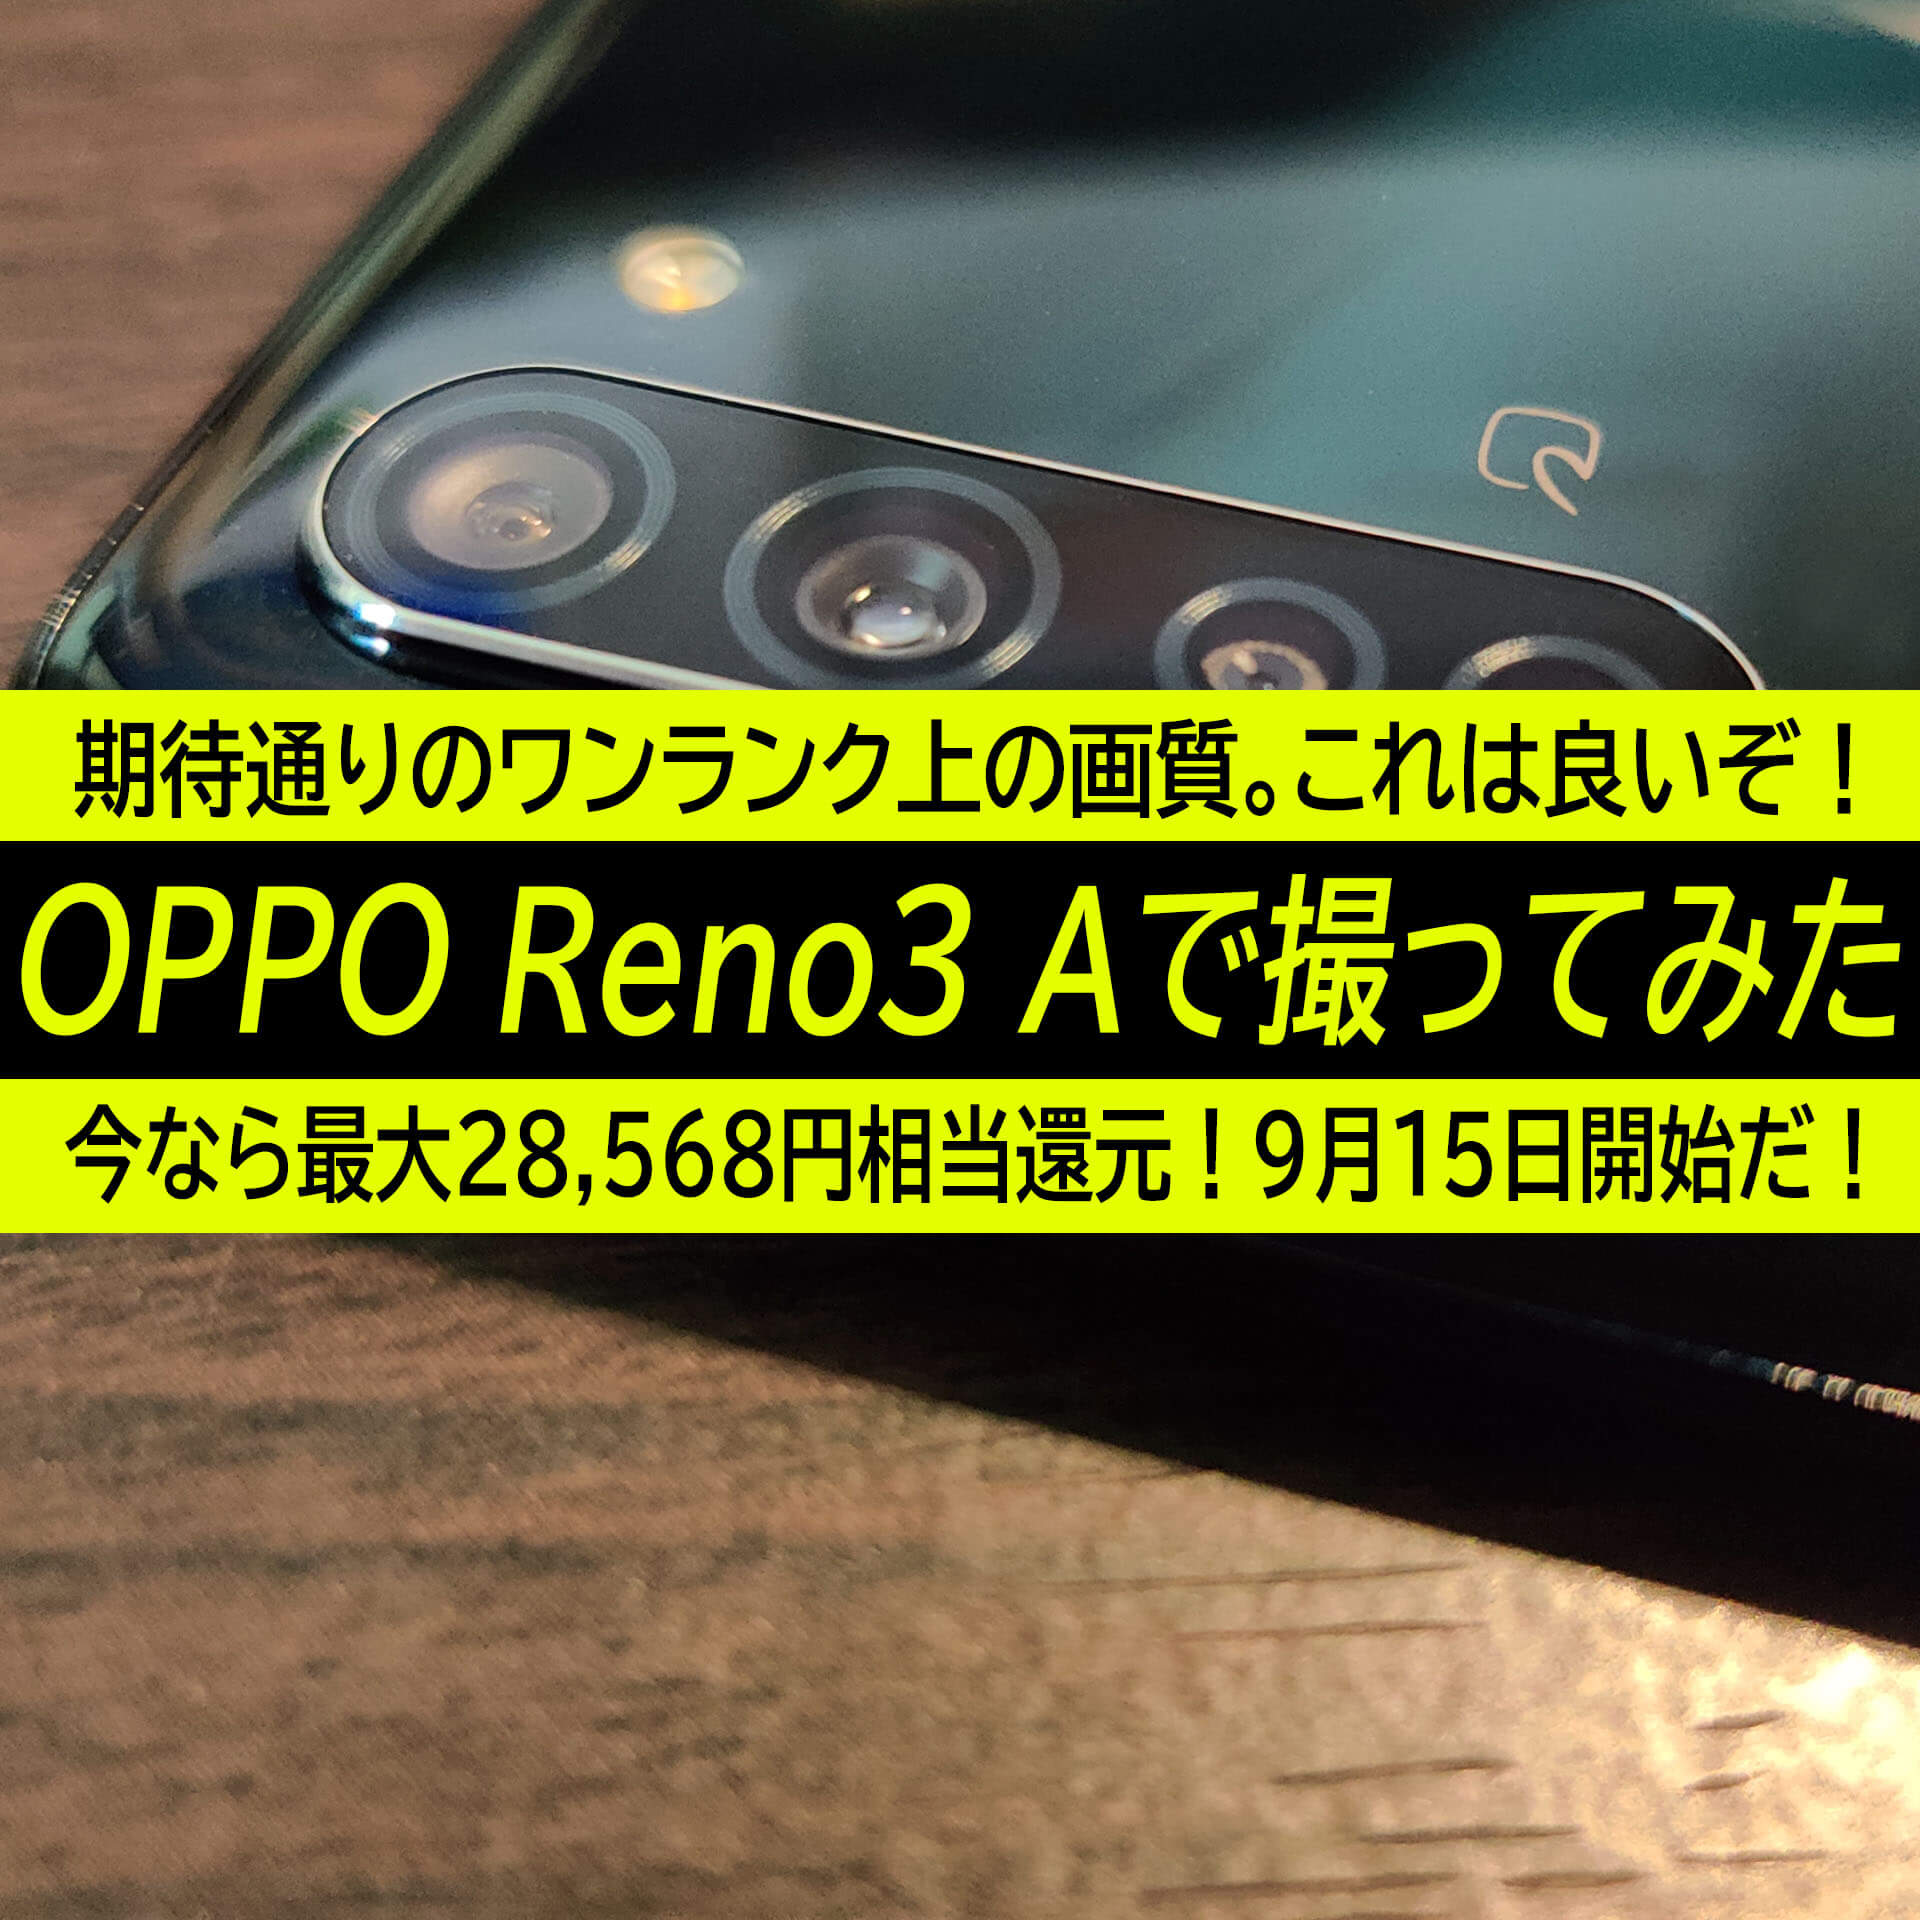 Oppo Reno3 Aのカメラで撮ってみた 期待通りのワンランク上の画質 9月15日 最大円相当の超還元開始